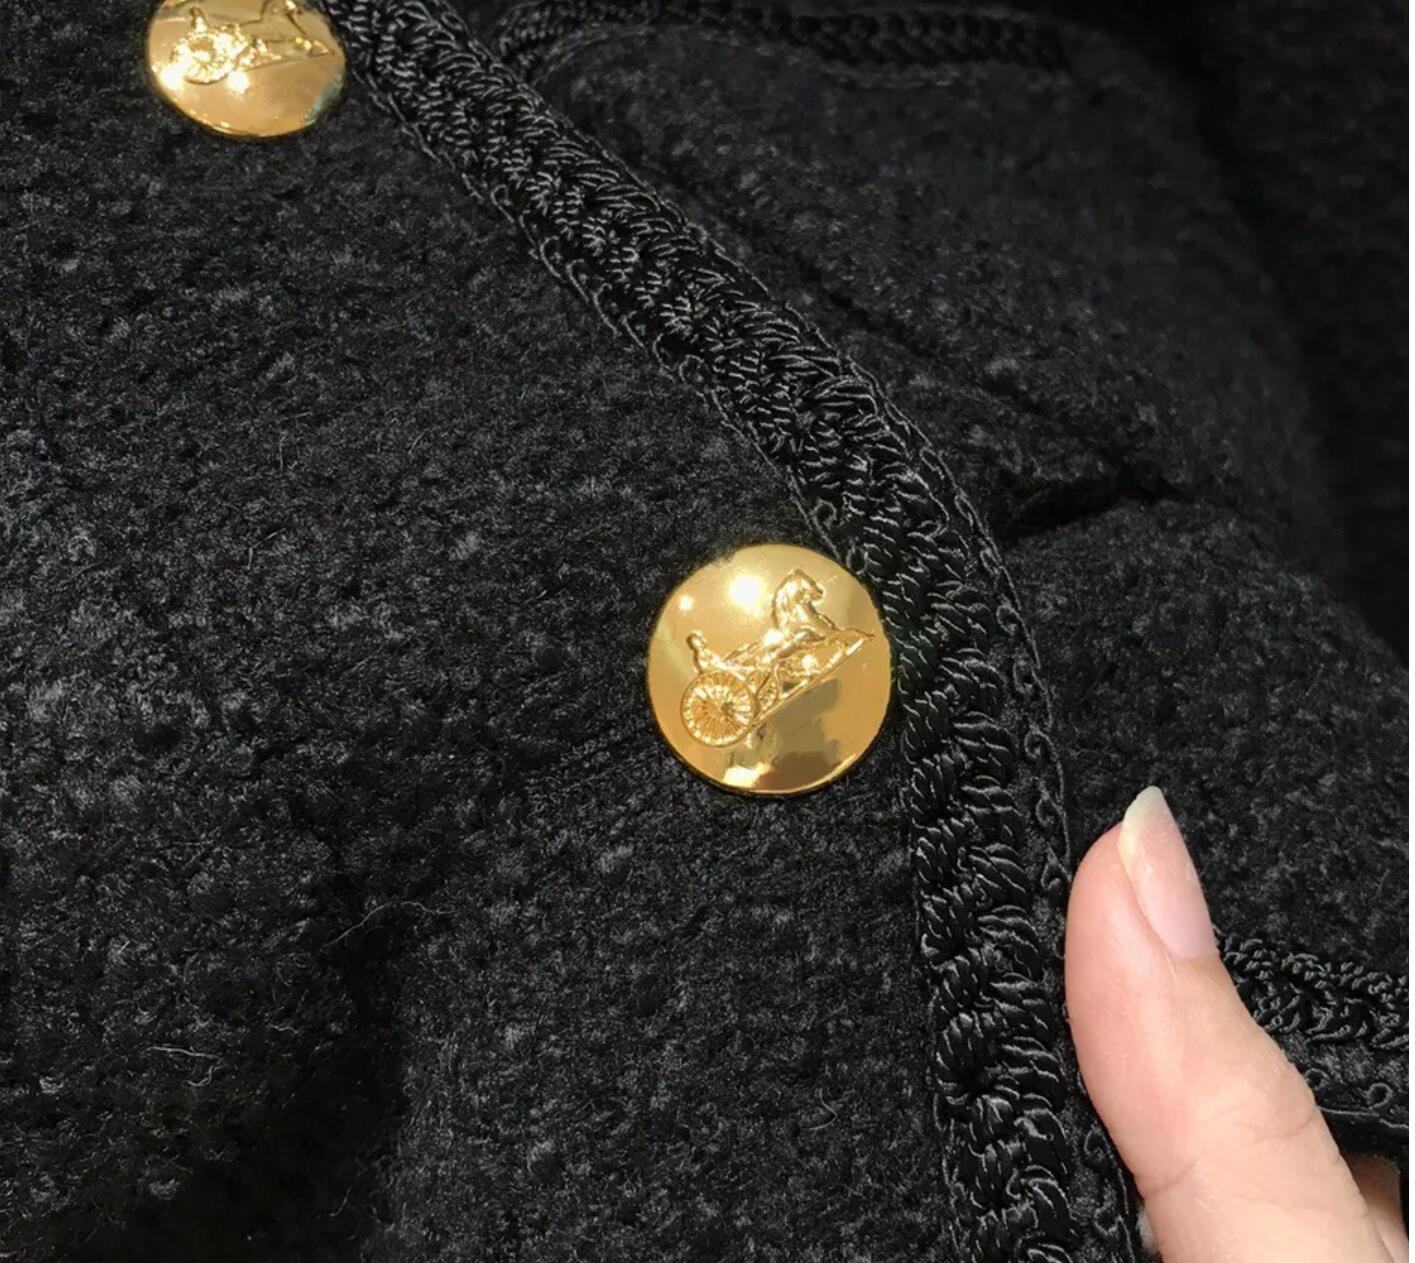 Printemps automne nouveau design des vestes en tweed féminin mode come de coues coloride cool à poitrine simple jeste à manteau smlxl